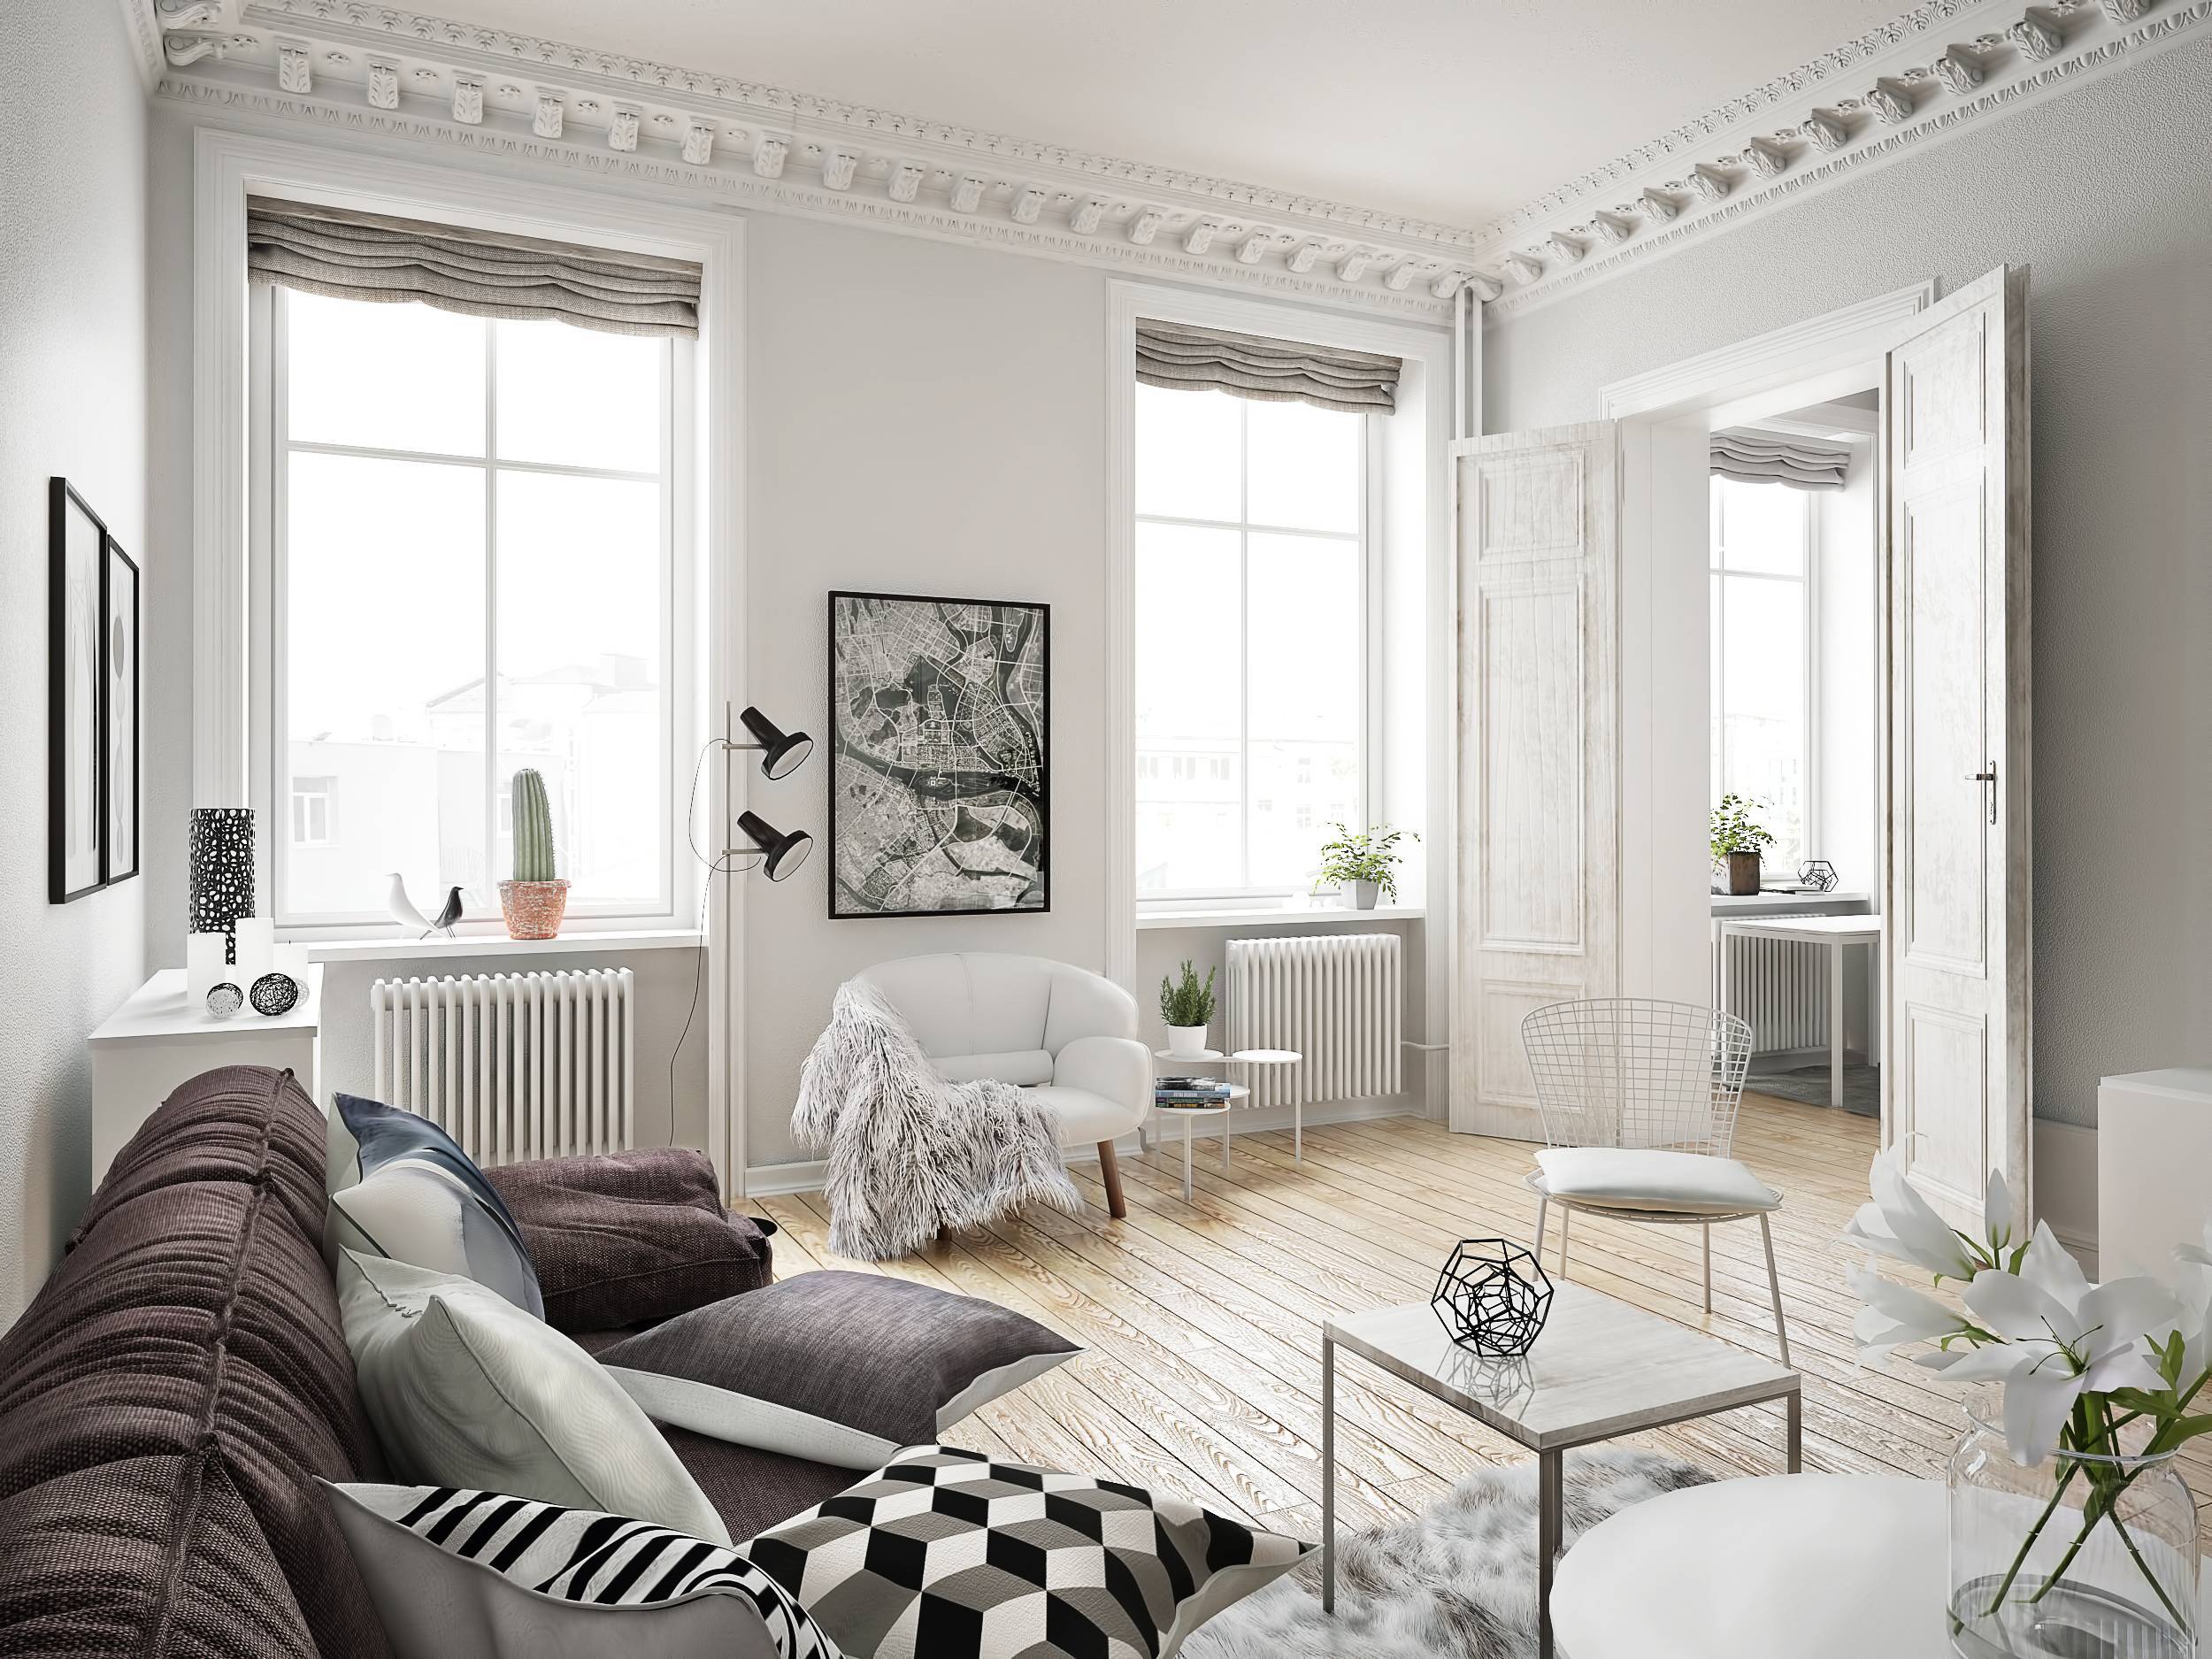 Скандинавский стиль в интерьере домов и квартир: фото, описание, рекомендации